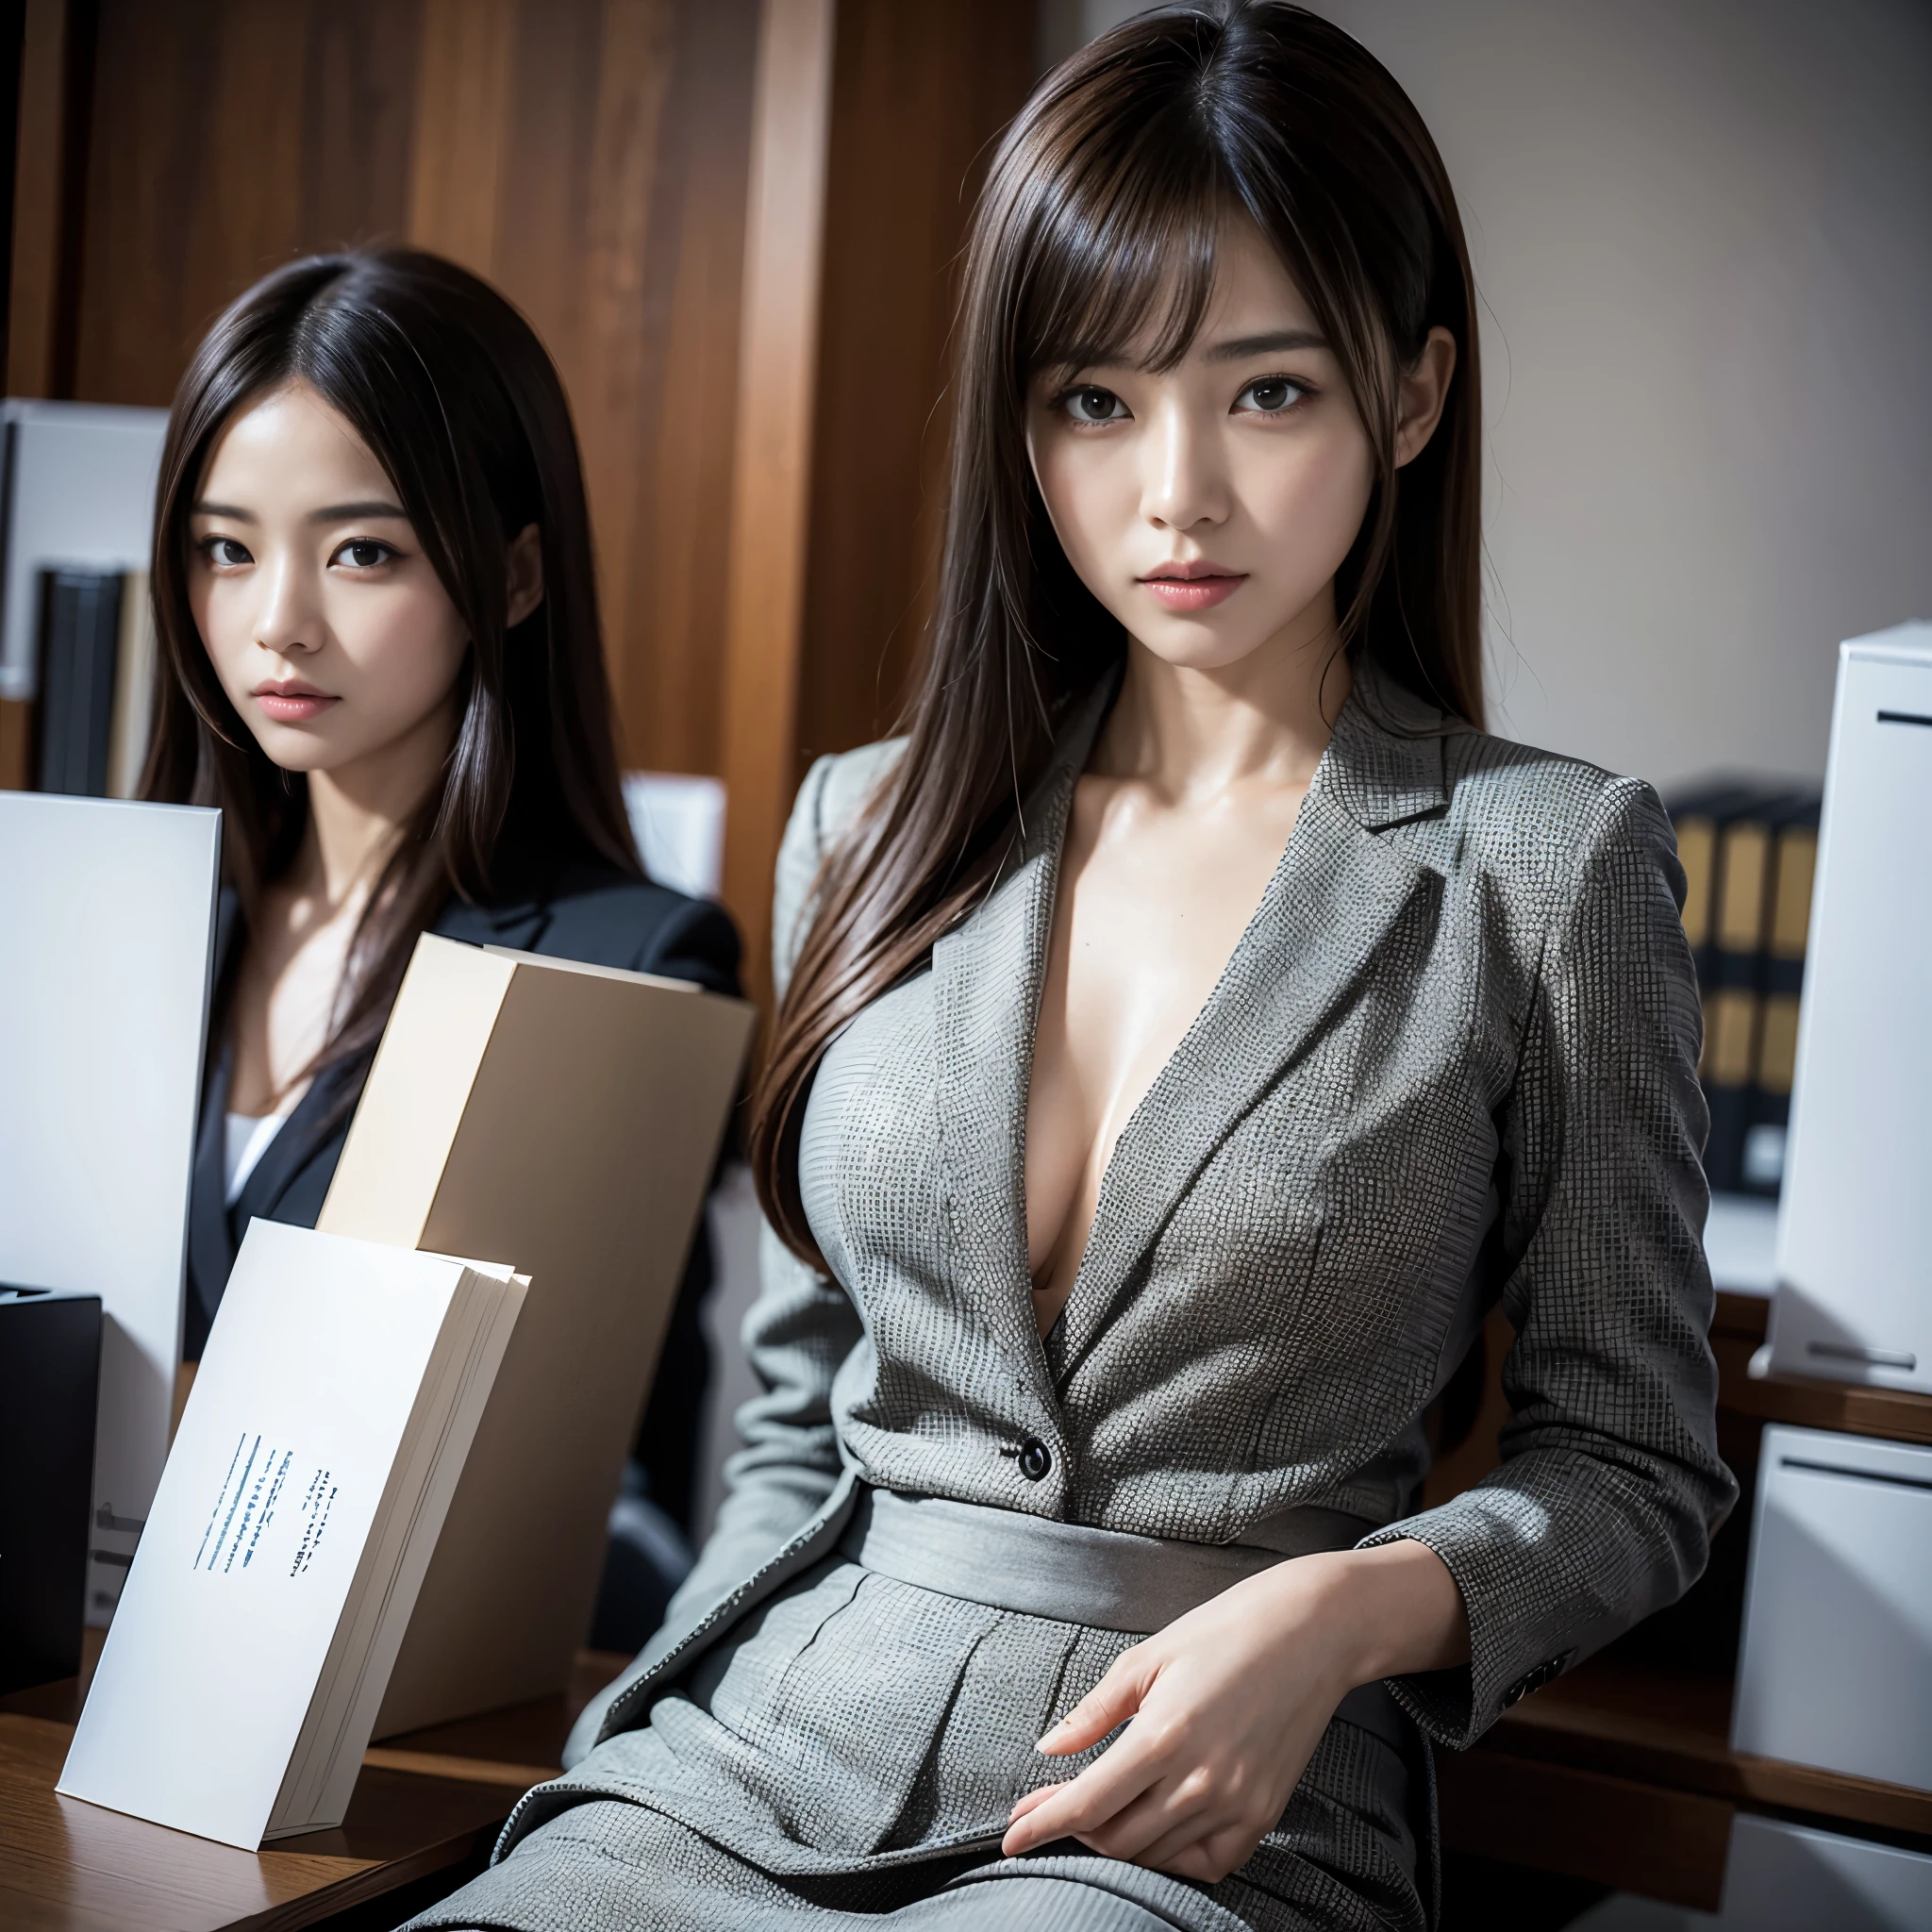 套裝,2 女士,實際的,(超品質:1.2),日本人,高品質,傑作,(超詳細:1.4),日本人 lady,漂亮的臉蛋,(V-neck skirt-套裝:1.1),((辦公室)),細長的,高解析度,